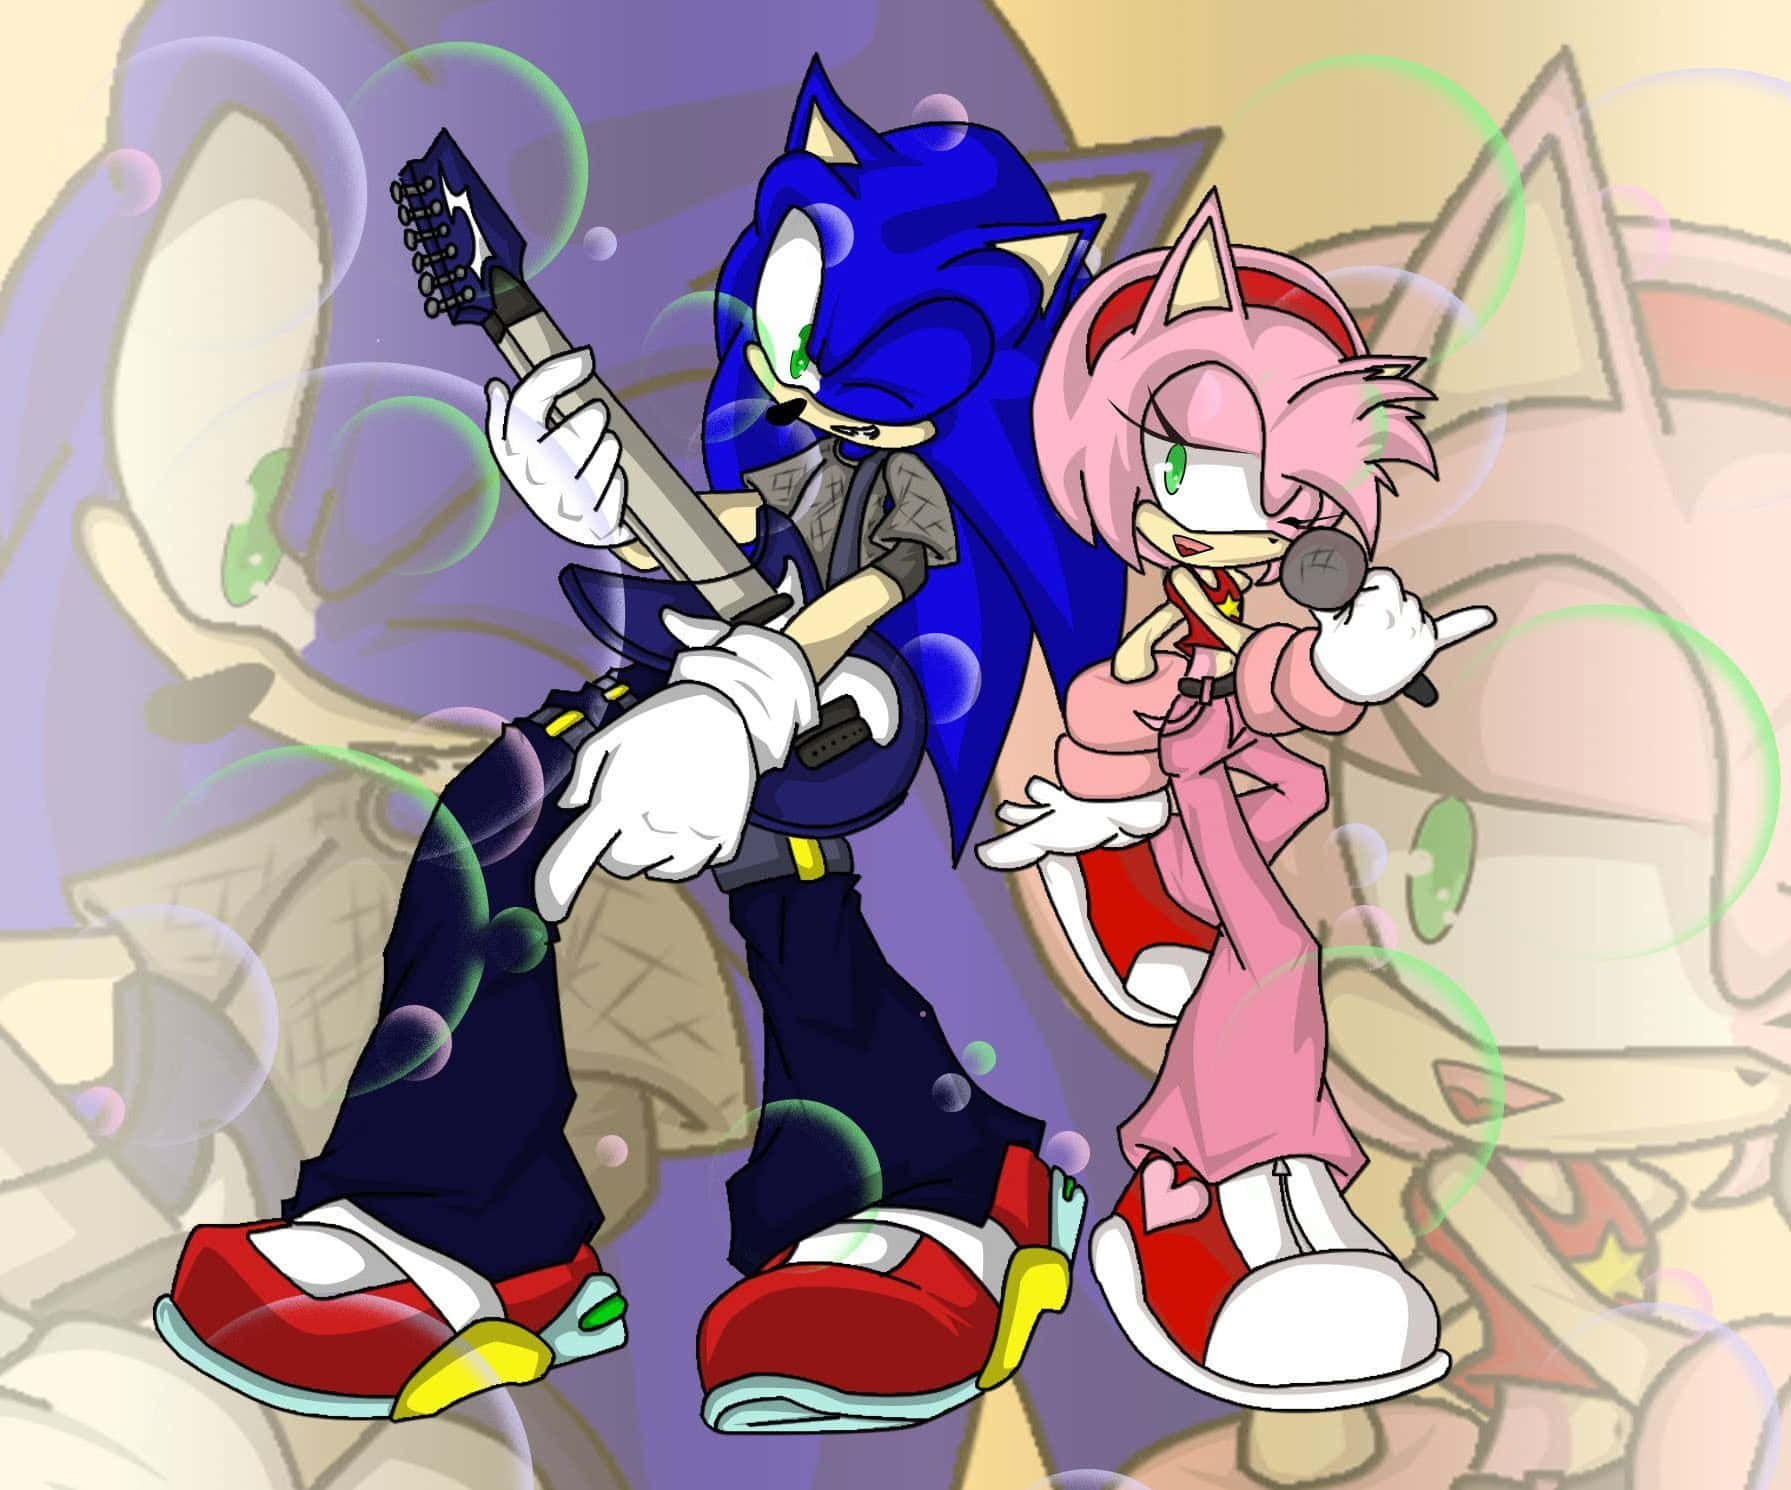 Aventuraromántica De Sonic Y Amy. Fondo de pantalla